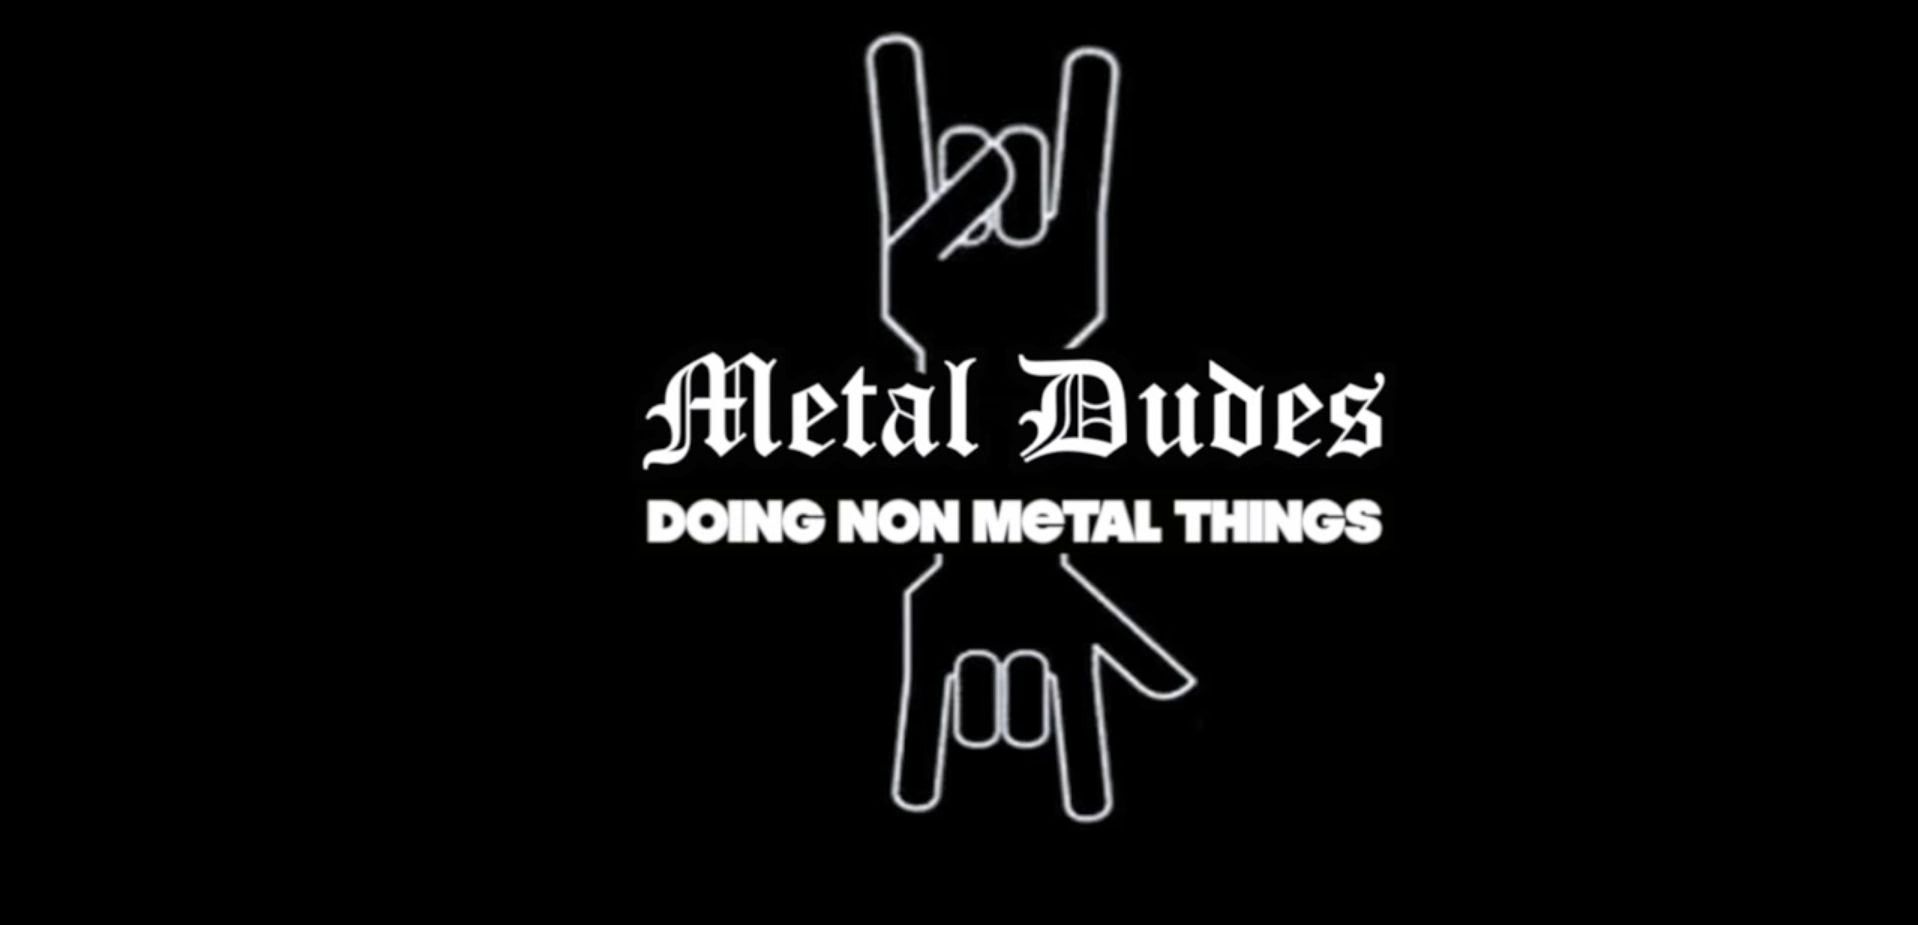 Fronter Jamey Jasta präsentiert die zweite Episode von "Metal Dudes Doing Non-Metal Things"